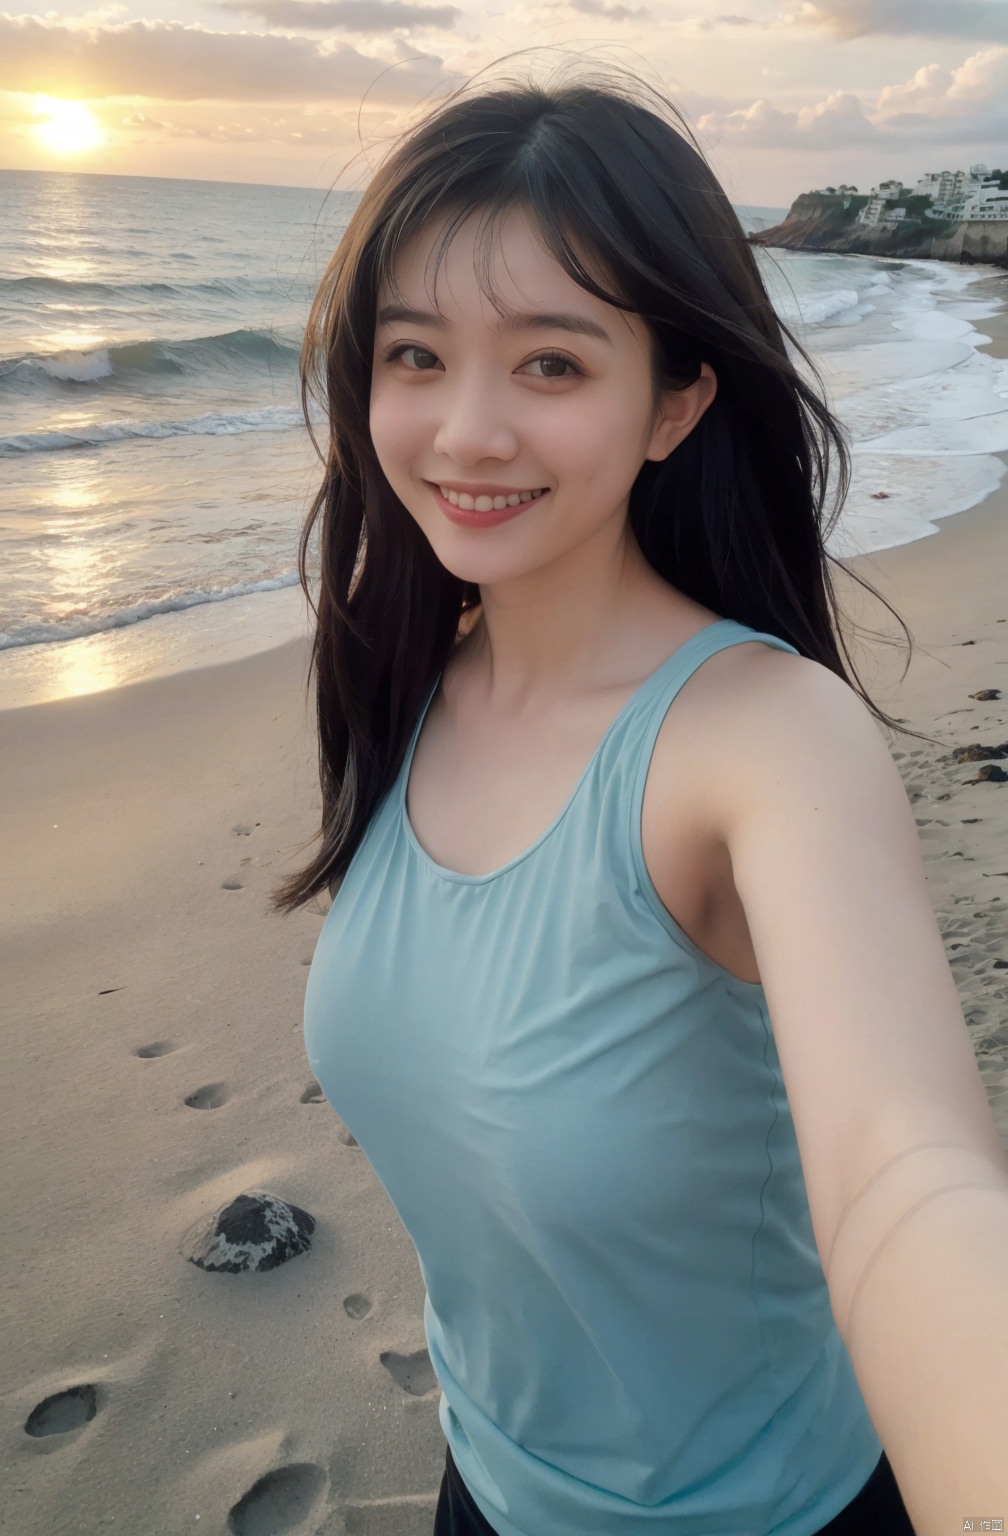  1 Girl, Selfie, Sea, Wind, Messy Hair, Sunset, Beach, (Aesthetics & Atmosphere: 1.2), Black **** Top, Smile,naked